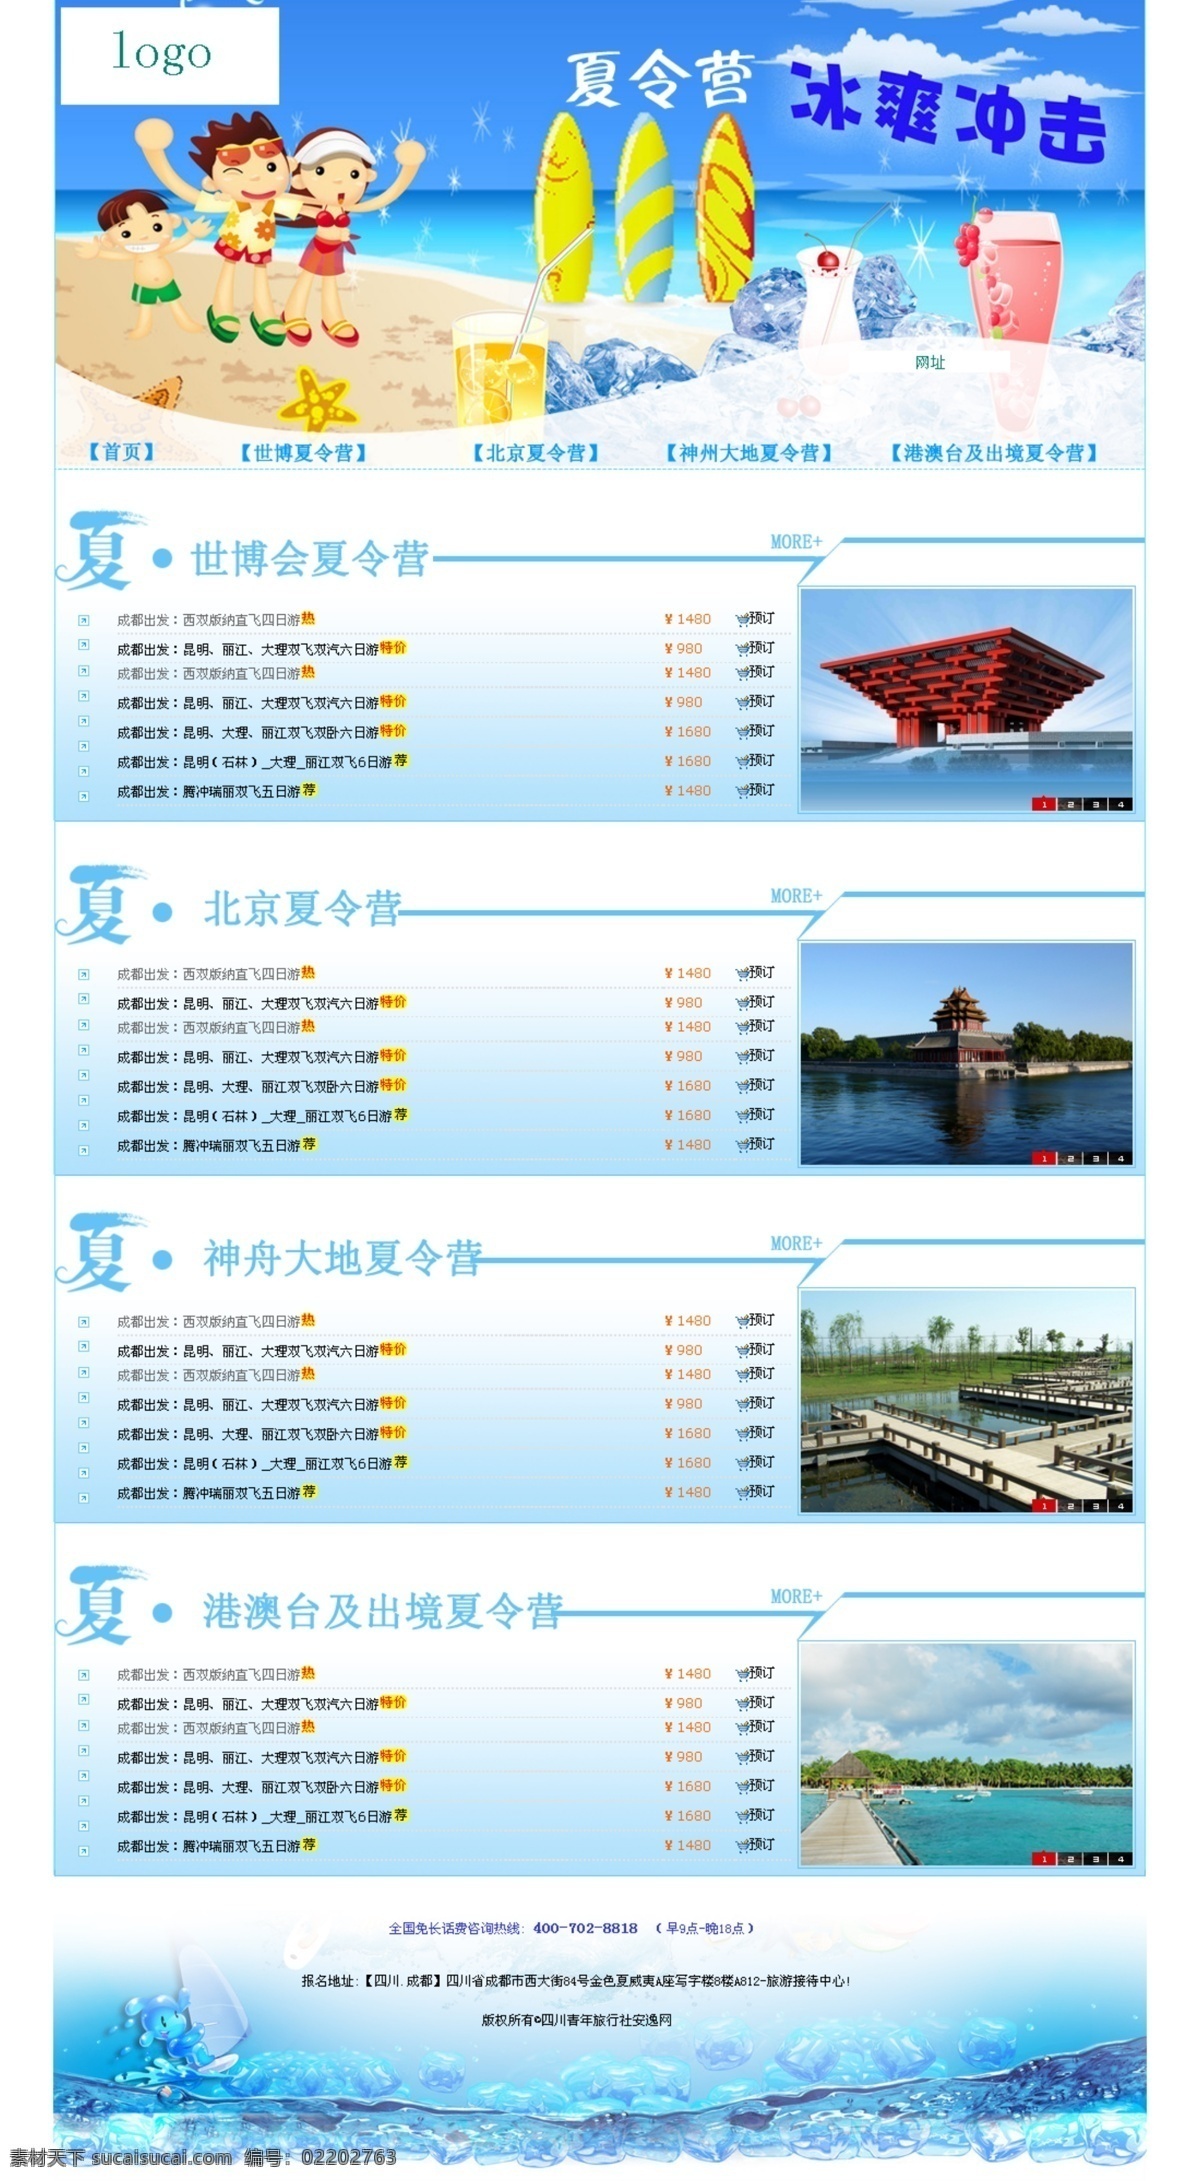 夏令营 旅游 网页 旅游网站 网页模板 夏季旅游 源文件 中文模版 旅游专题页面 网页素材